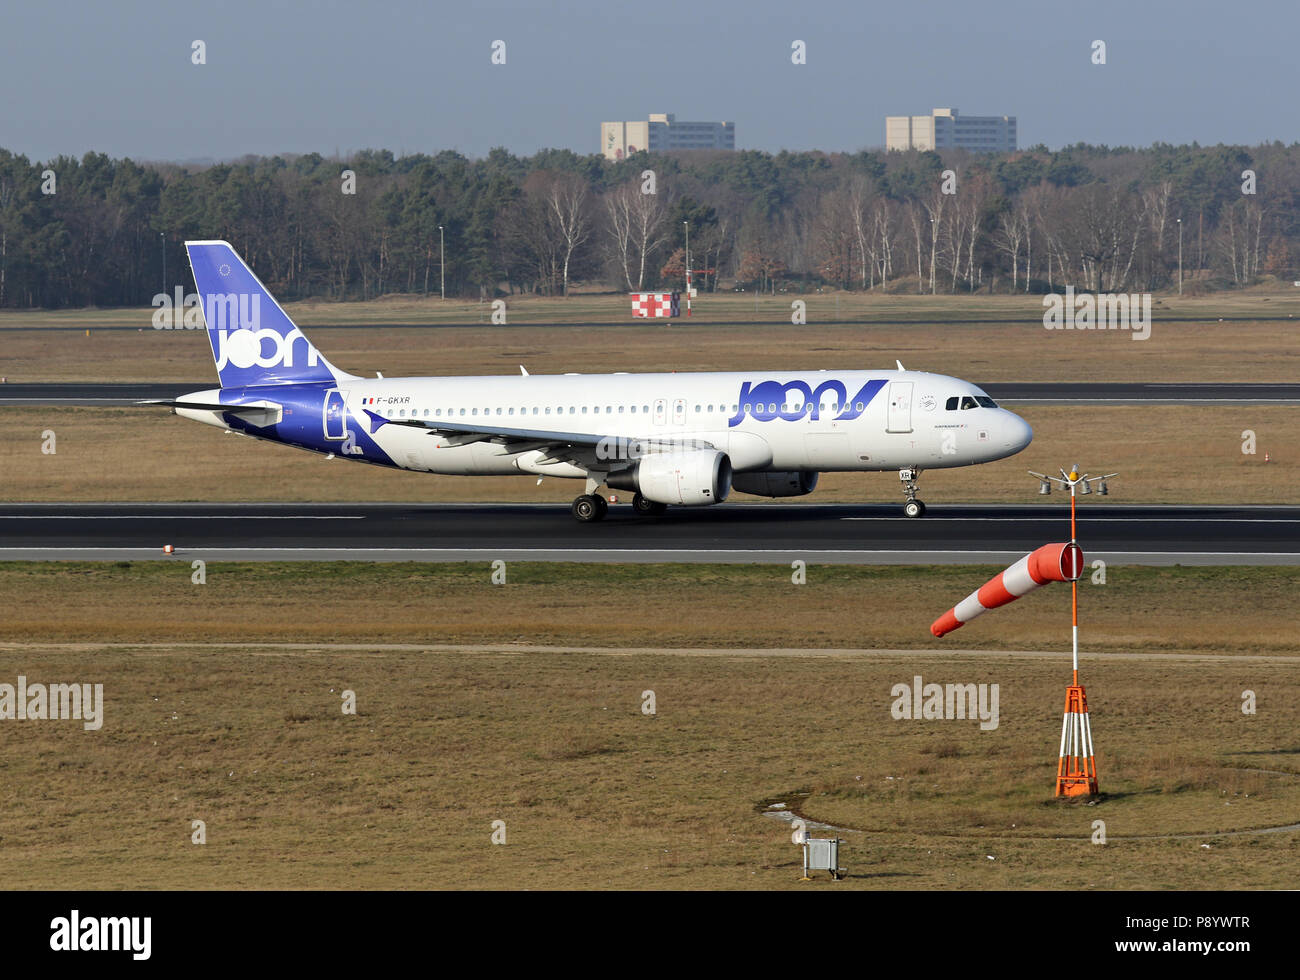 Berlin, Allemagne, l'Airbus A320 de la compagnie aérienne Joon sur la piste de l'aéroport Berlin-Tegel Banque D'Images